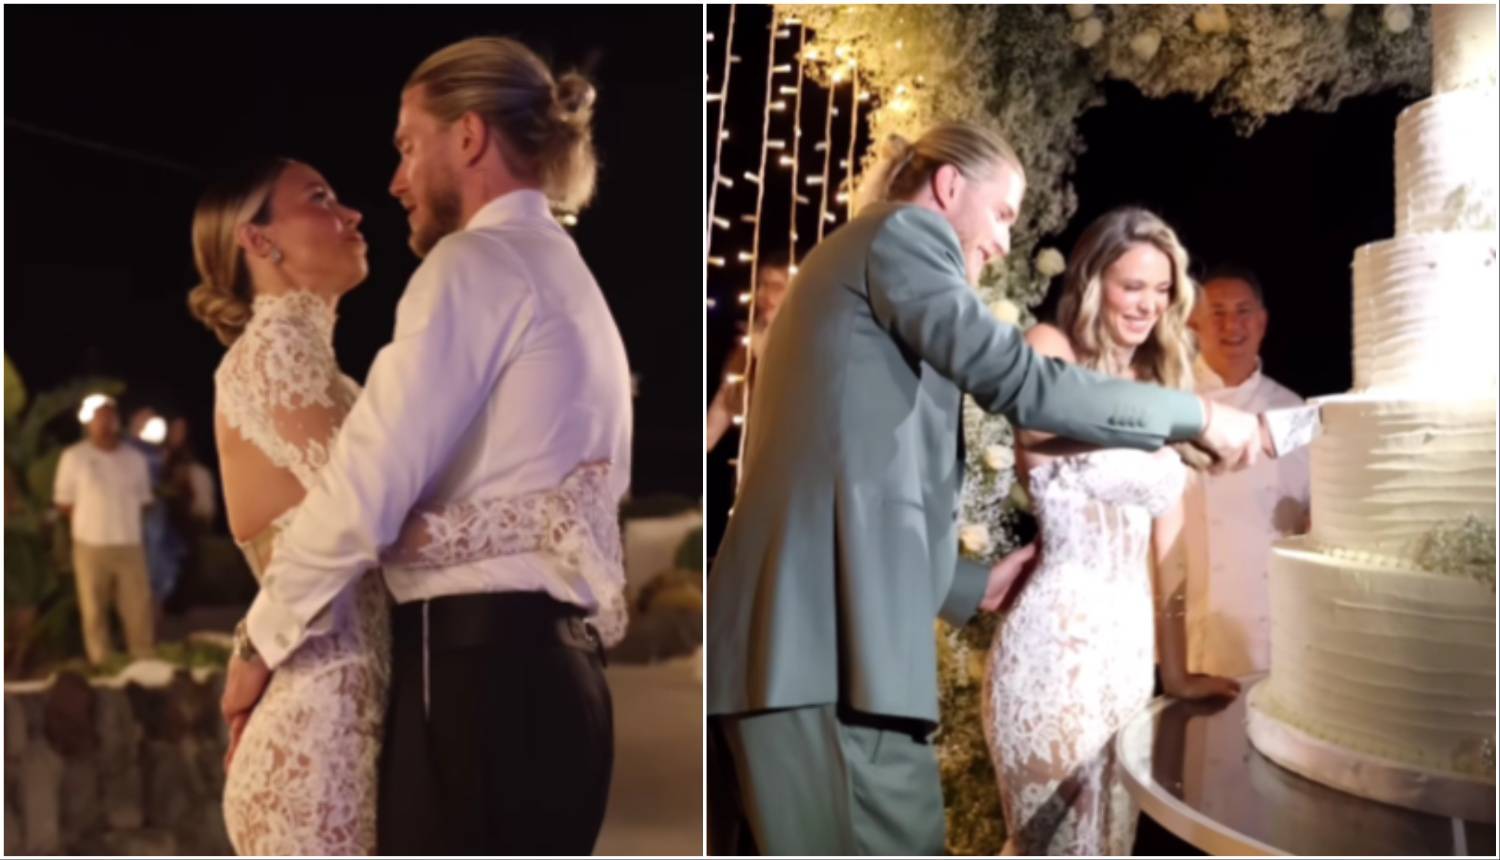 VIDEO Diletta Leotta pokazala trenutke s vjenčanja: Evo kako je izgledala raskošna svadba